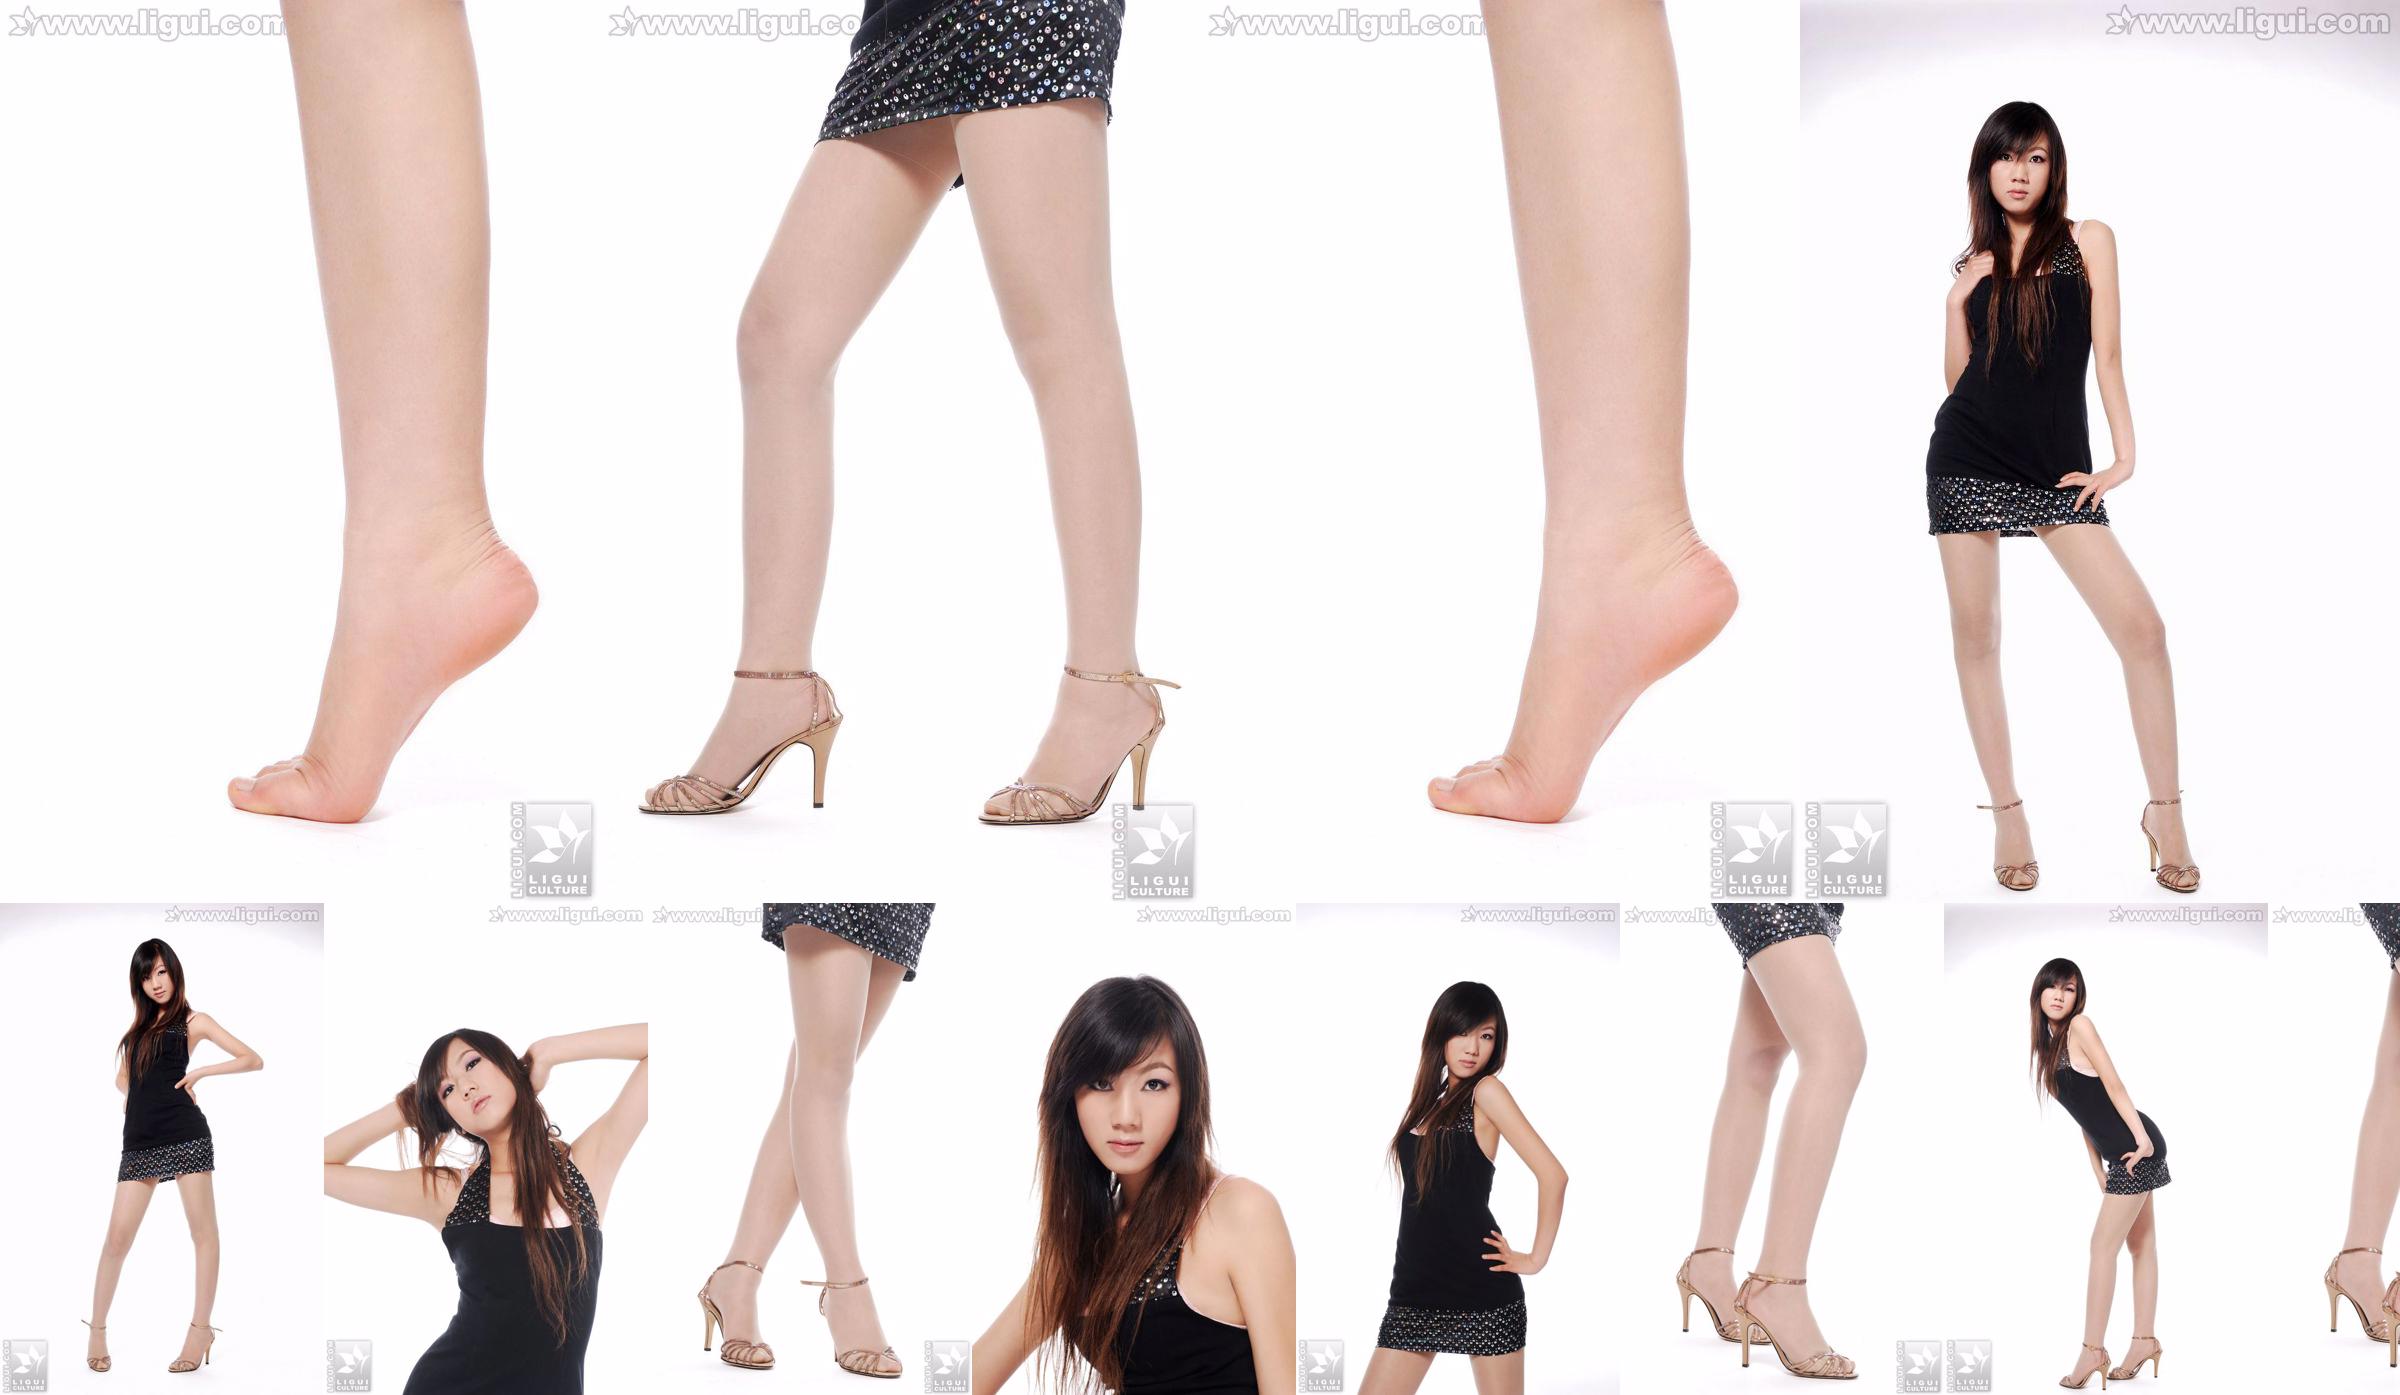 Modelo Sheng Chao "lindo novo show de pé de jade de salto alto" [Sheng LiGui] Foto de belas pernas e pé de jade No.7d6bff Página 1